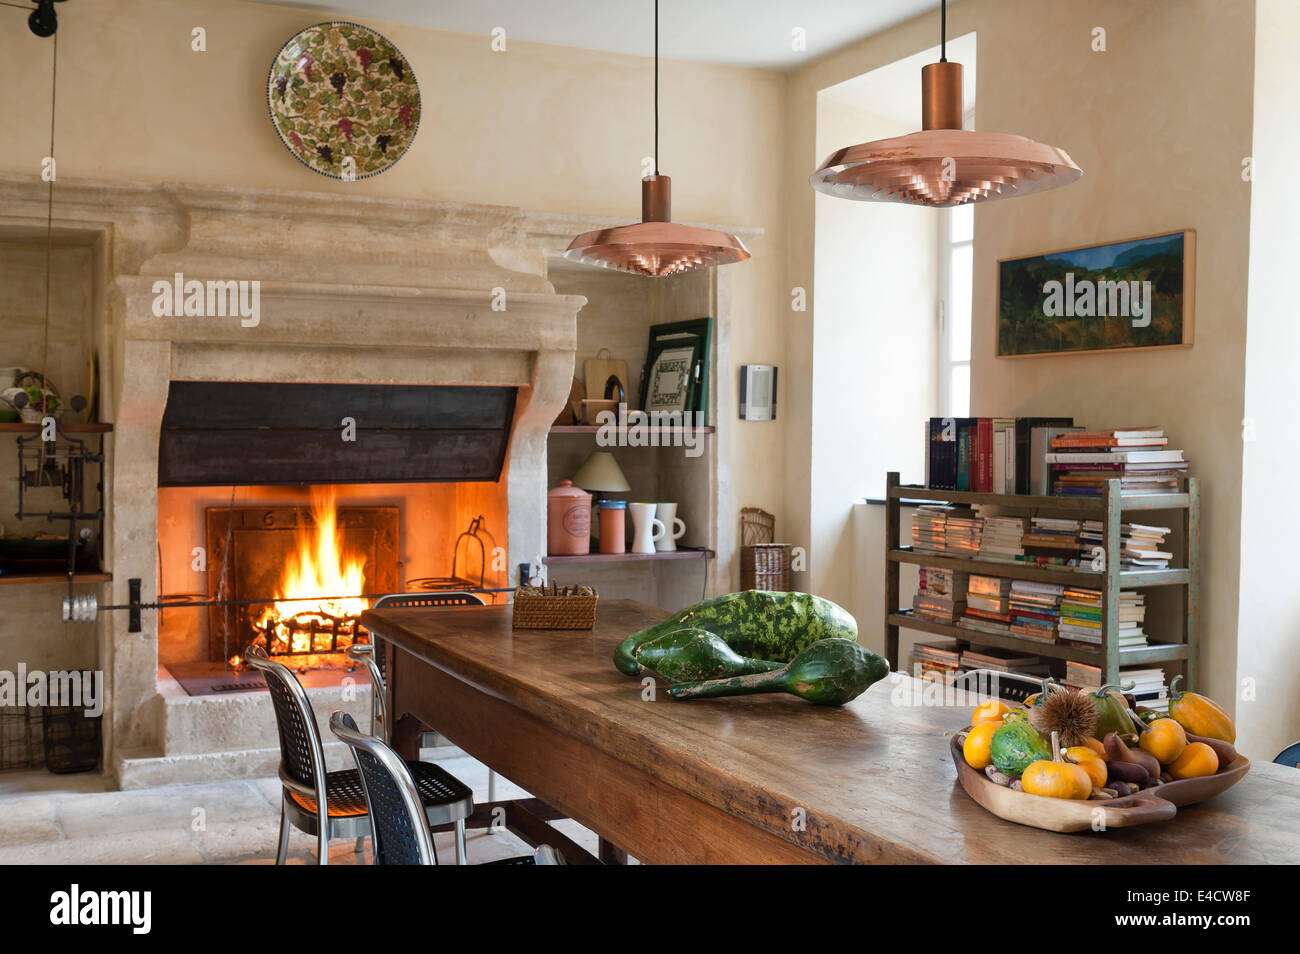 La cuisine provençale avec grande cheminée en pierre et table à manger en bois. La poignée de cuivre sont d'un design Arne Jacobsen Banque D'Images